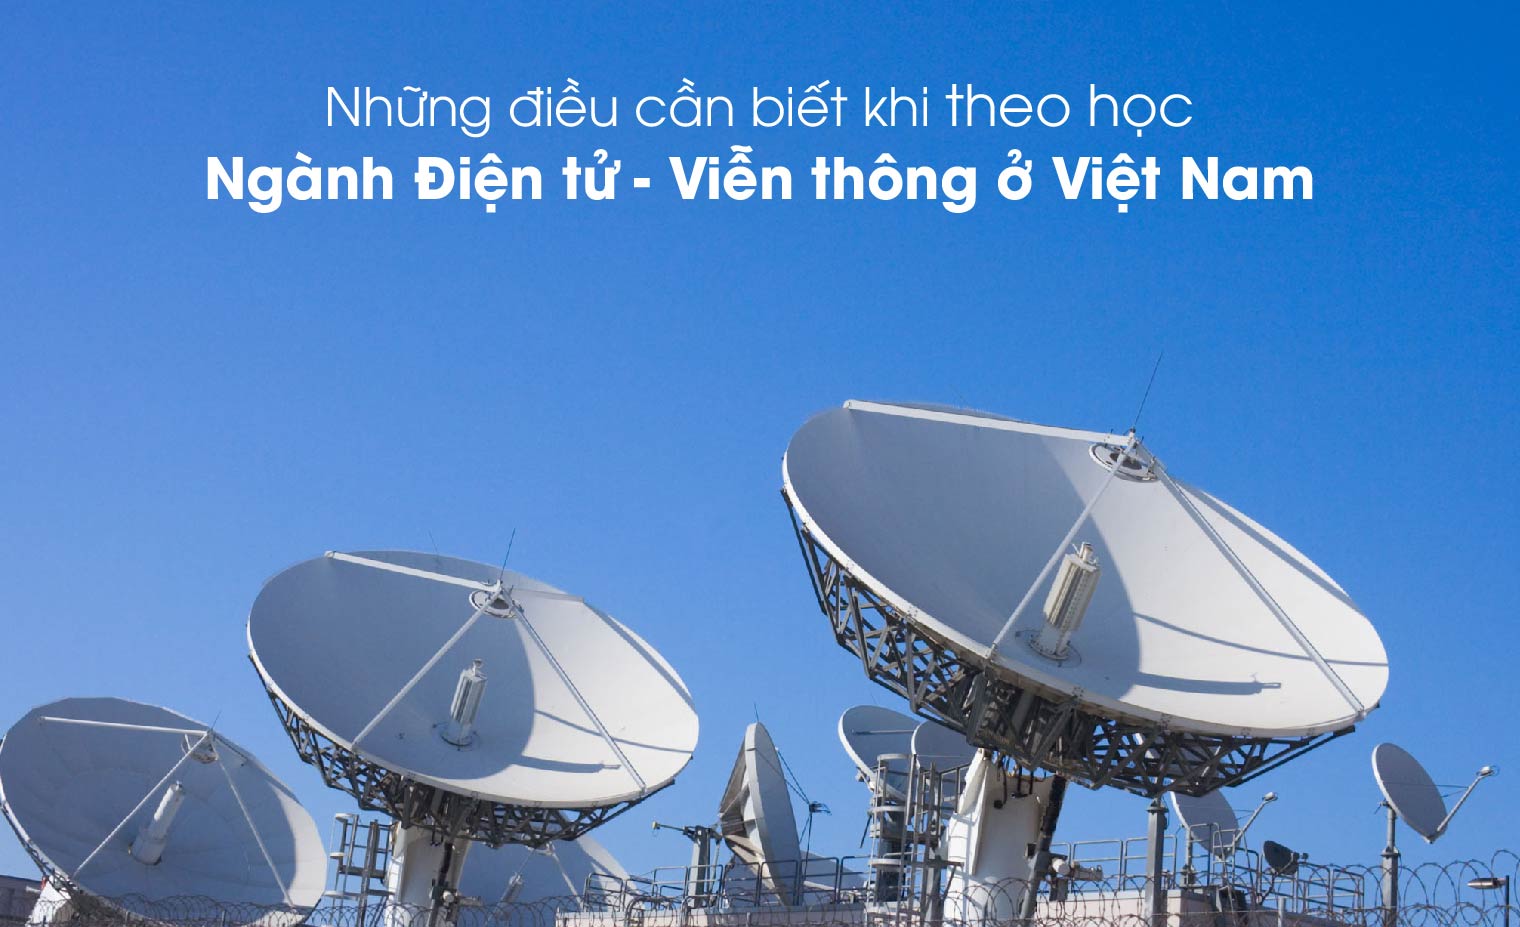 Ngành Điện tử - Viễn thông Việt Nam: Học gì? Học ở đâu? Ra trường làm gì?